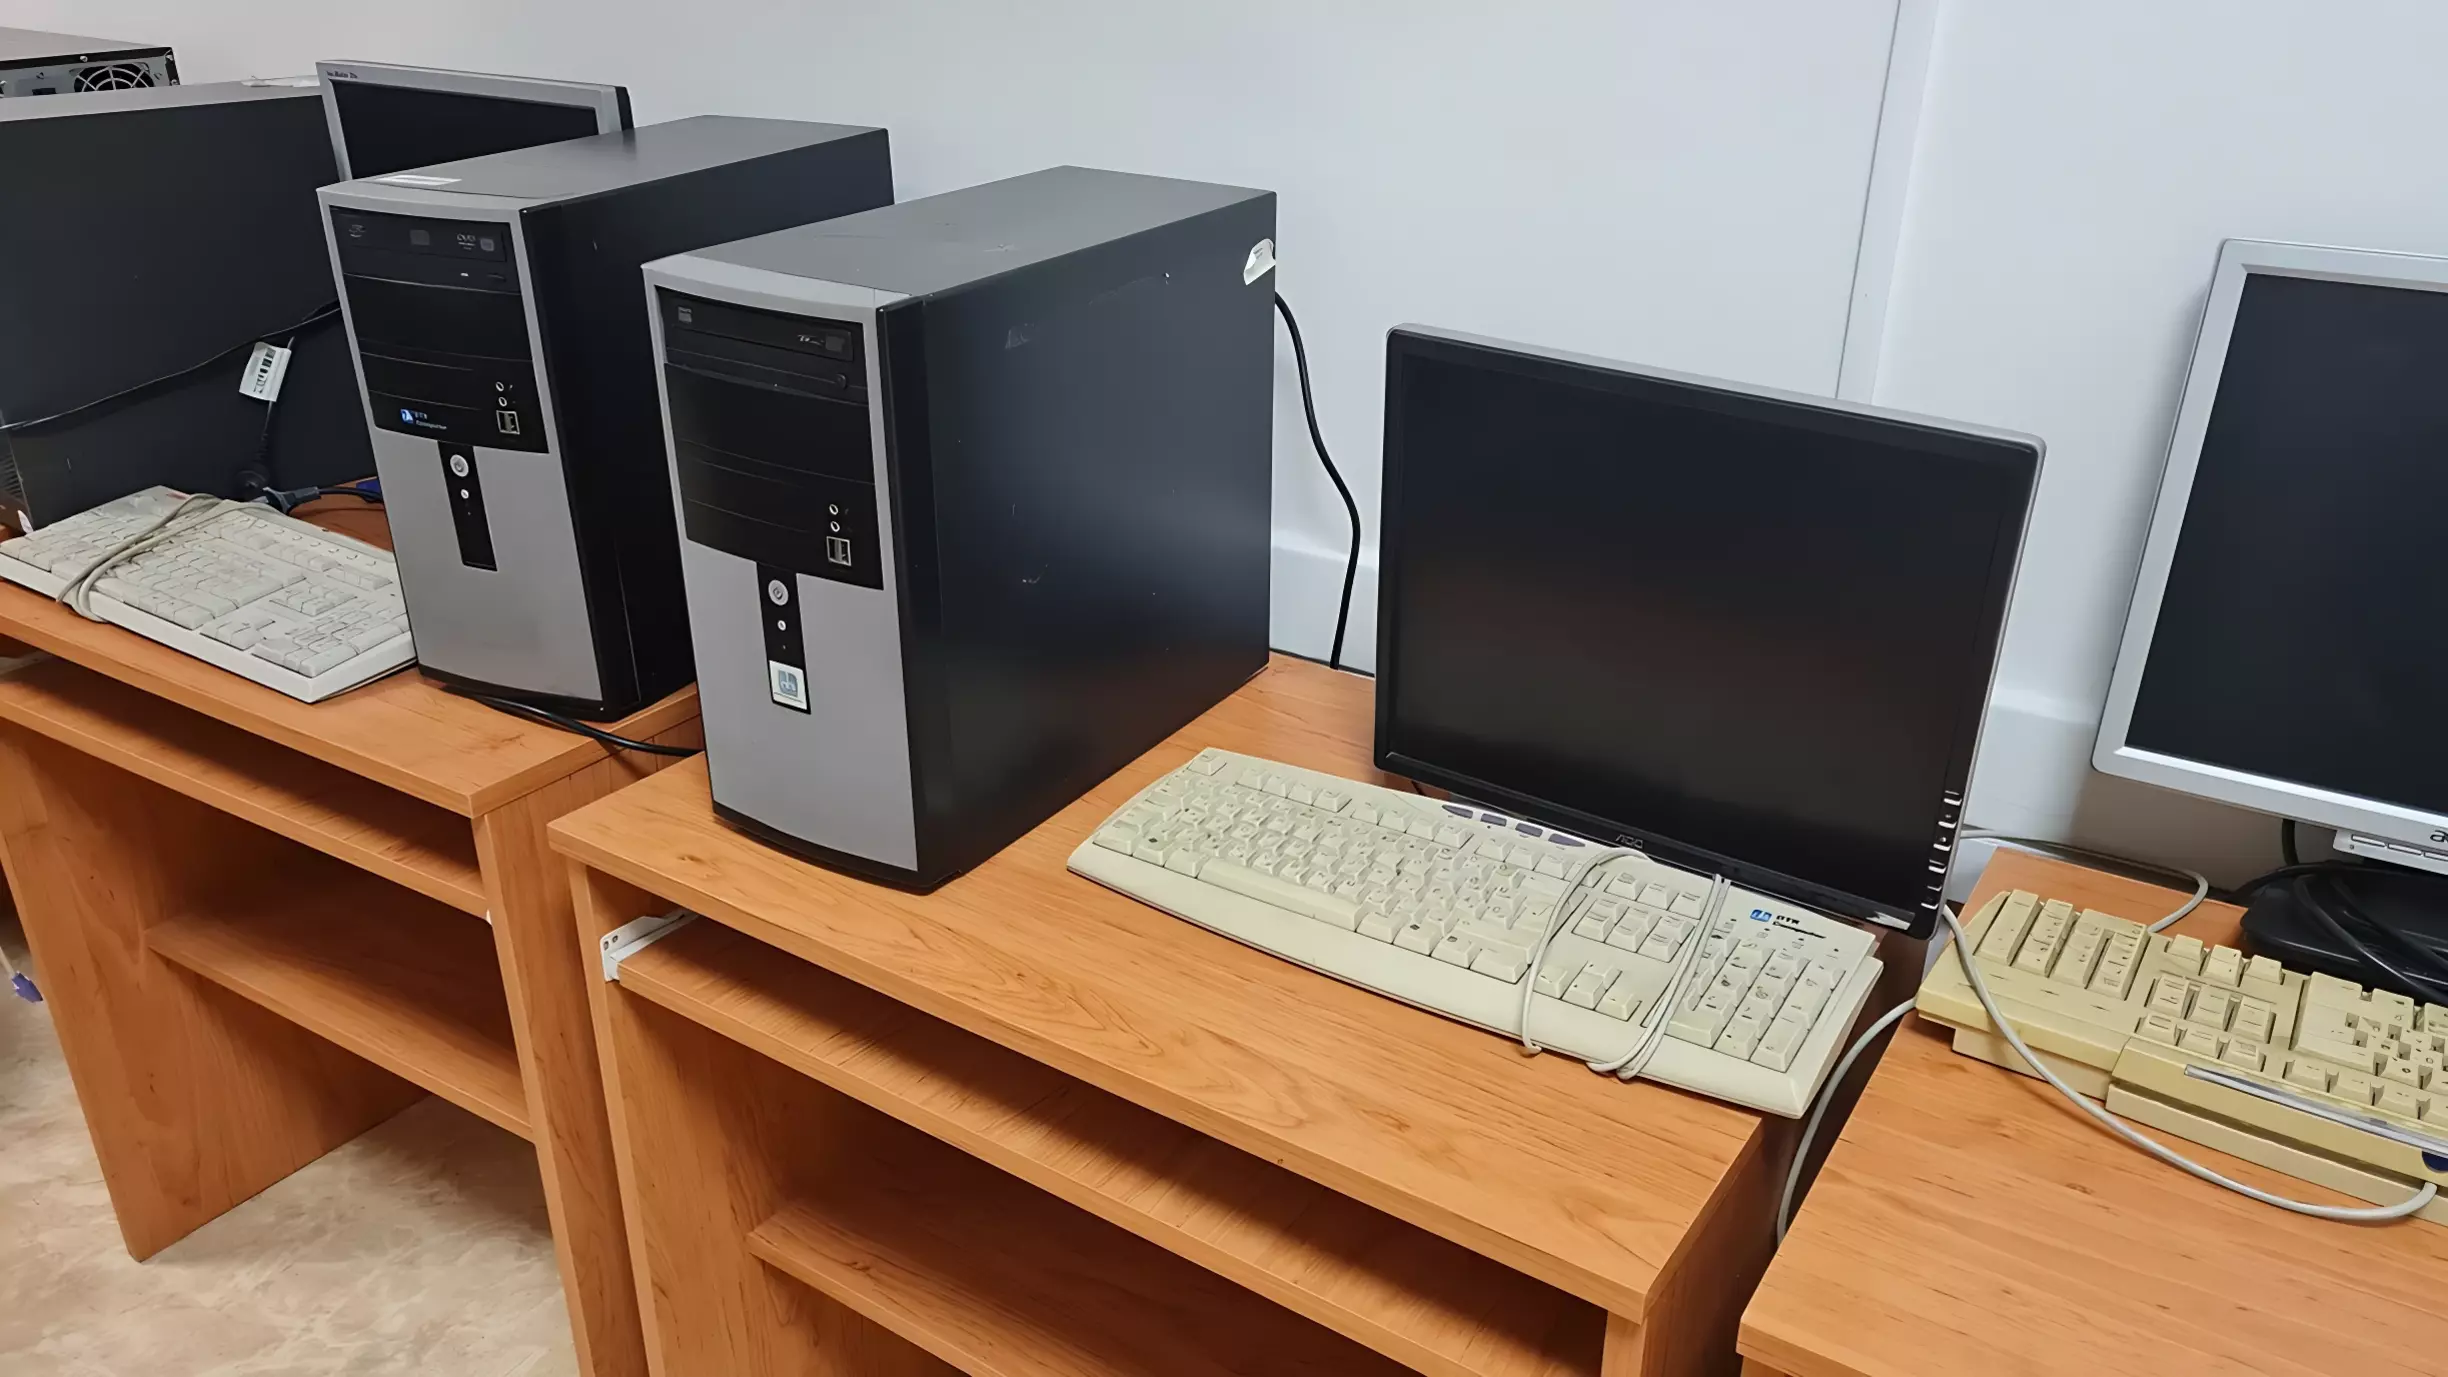 УФАС отклонило жалобу поставщика на закупку компьютеров в Аскизском районе